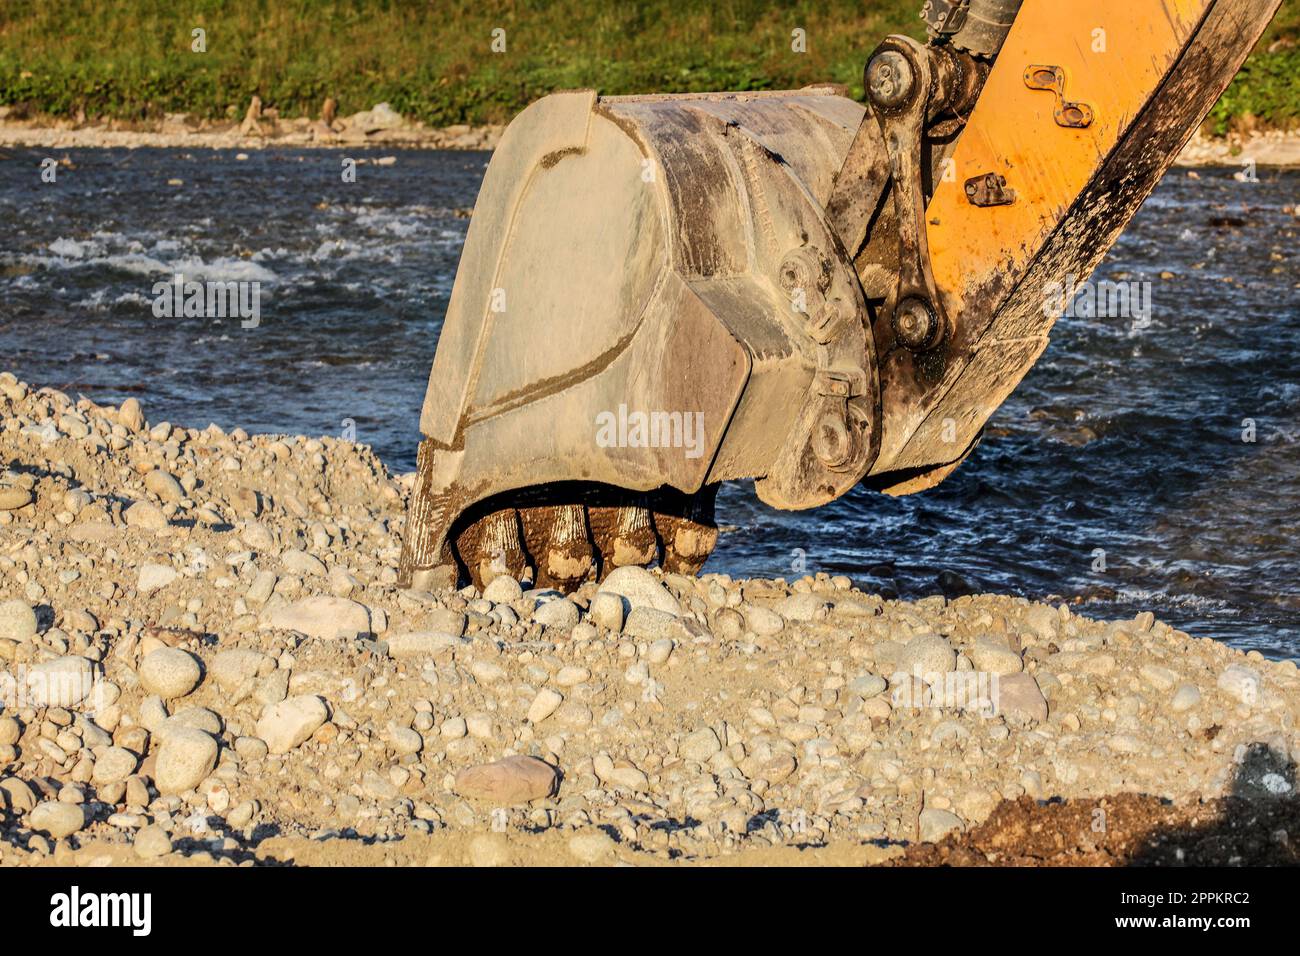 Digger excavateur jaune (machine) seau de creuser dans la masse des pierres de la rivière. Banque D'Images